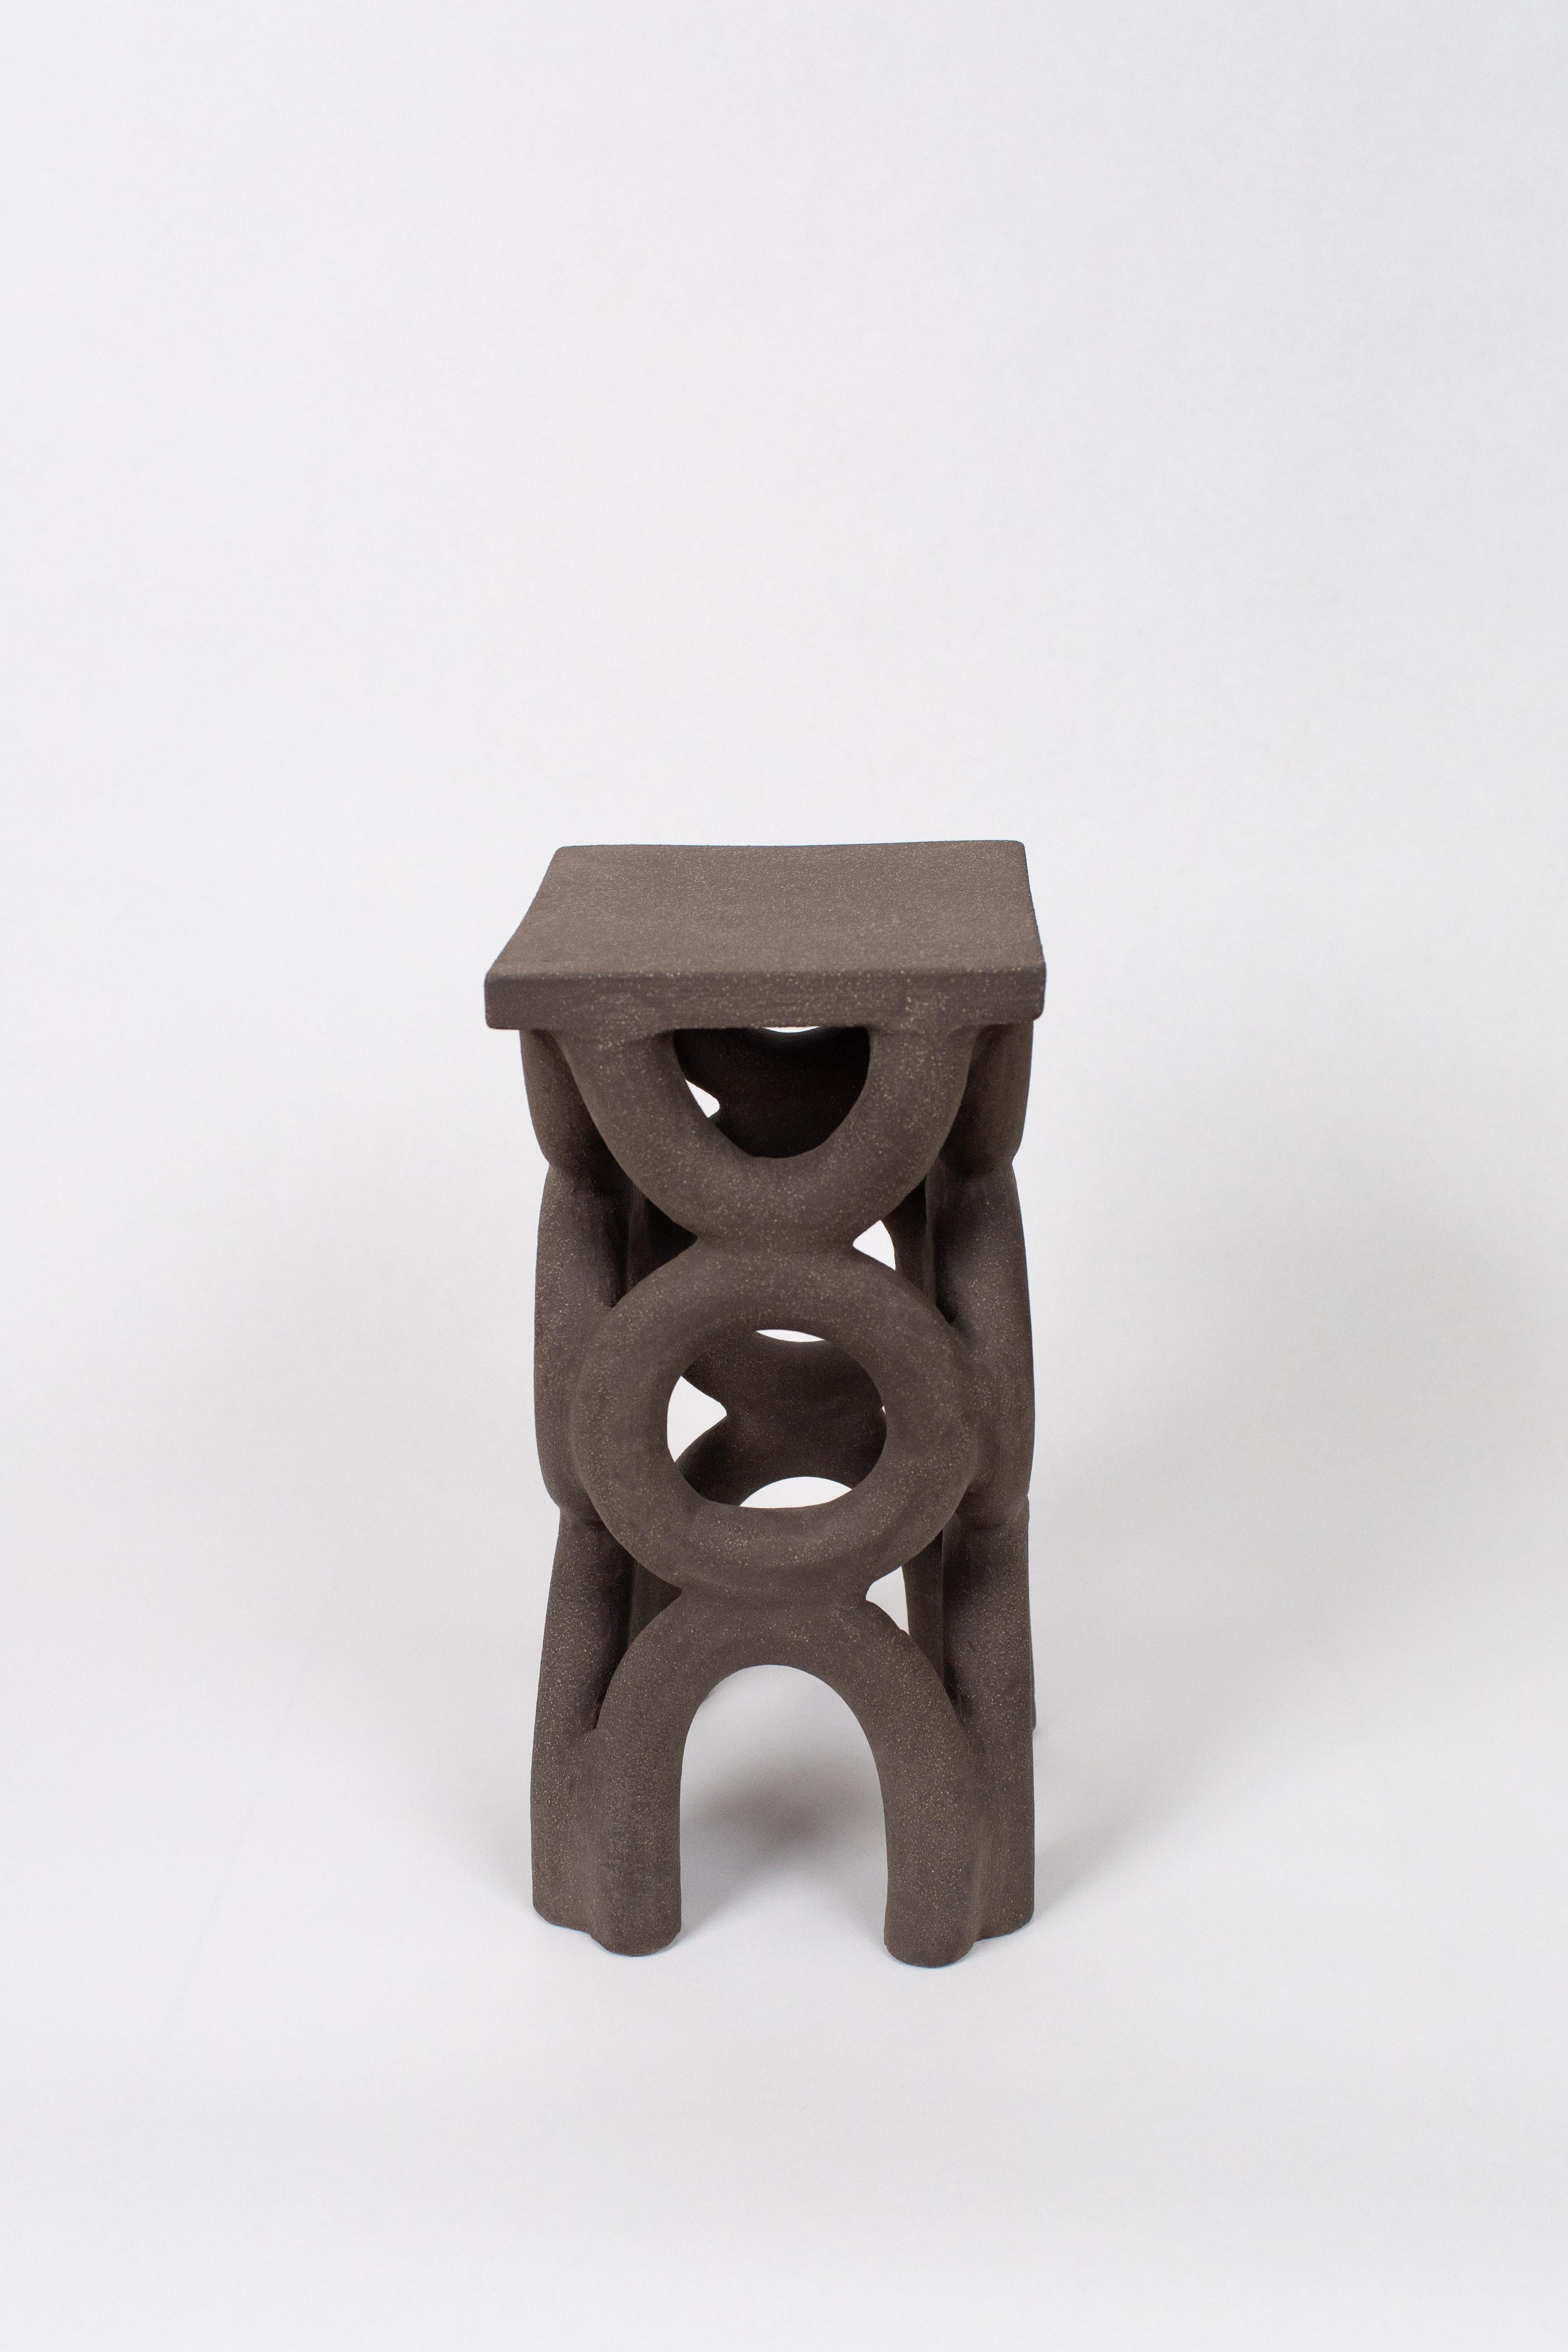 solid dark stool